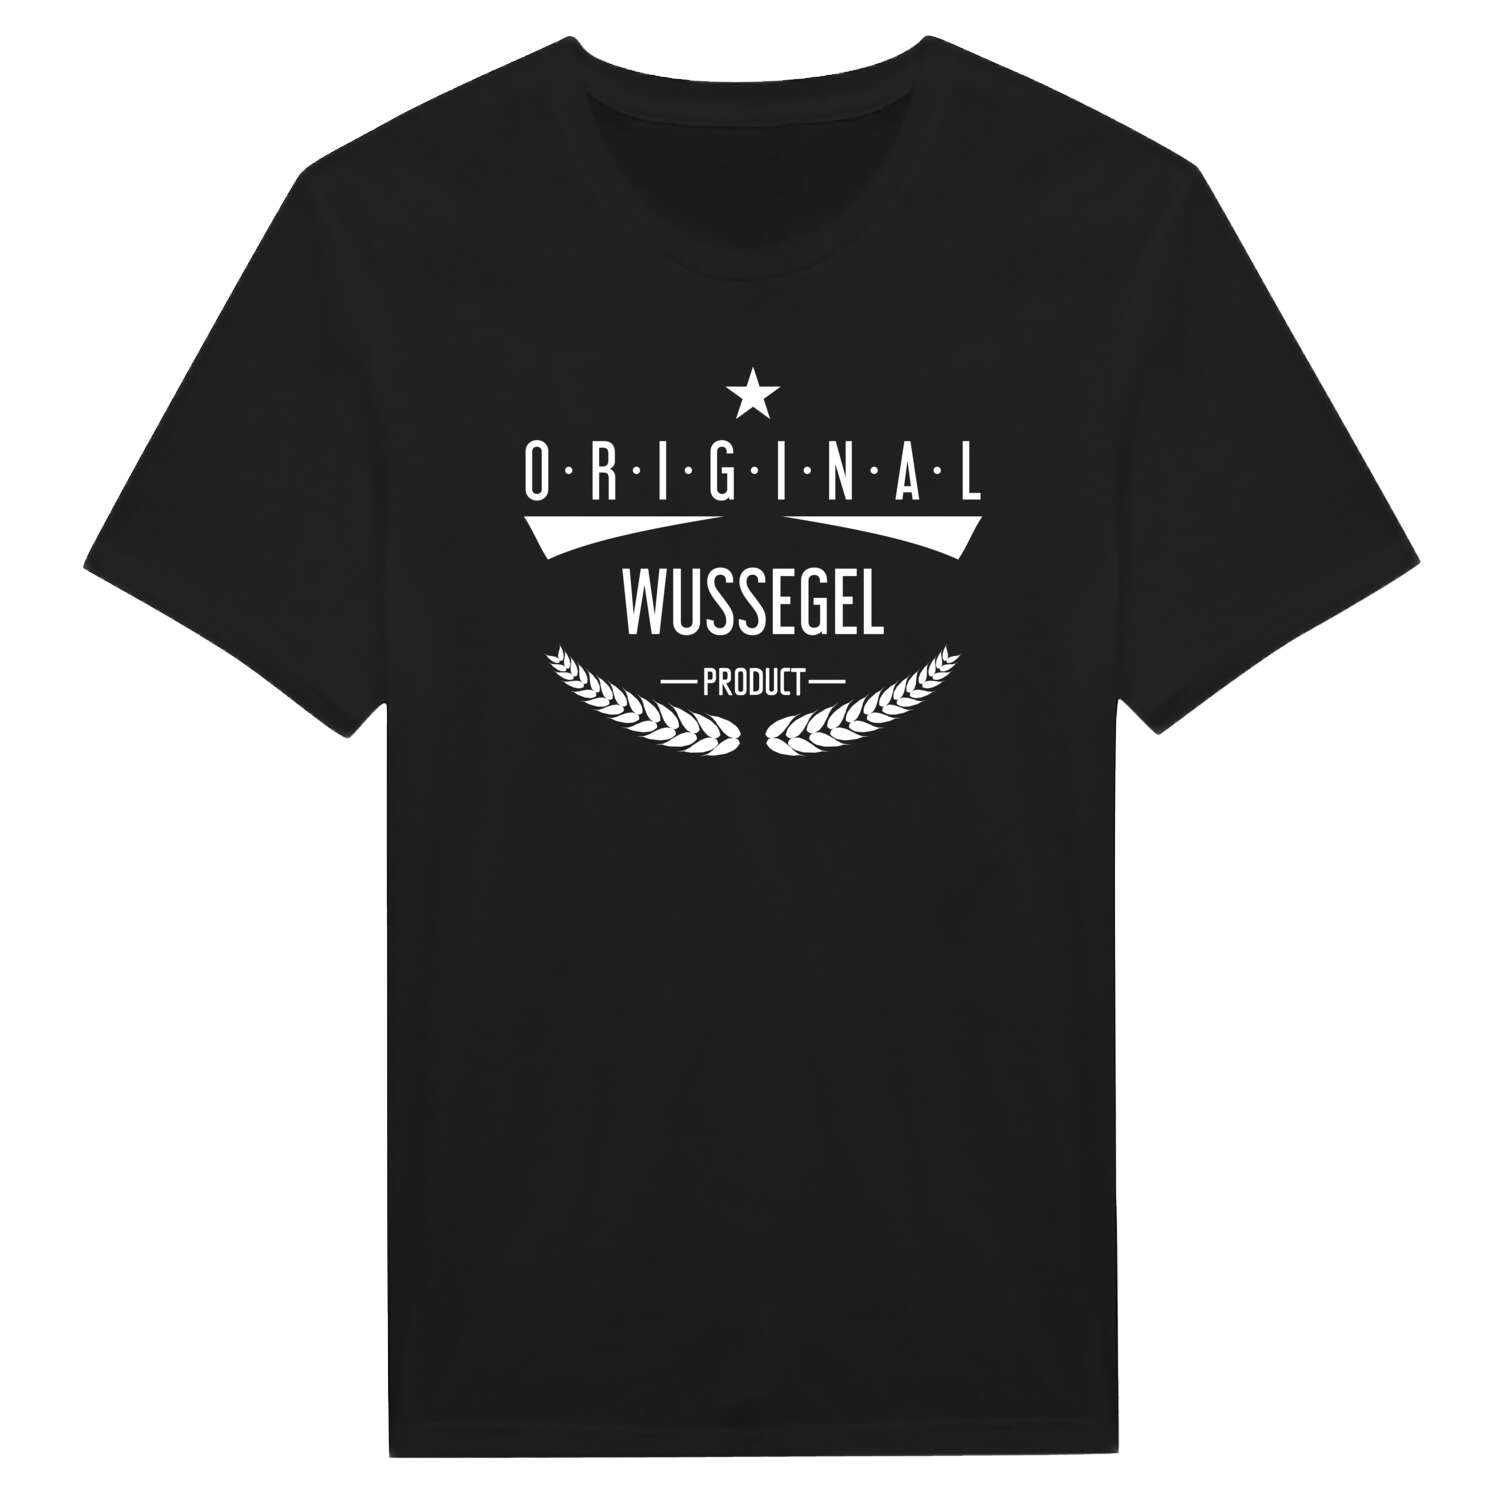 Wussegel T-Shirt »Original Product«